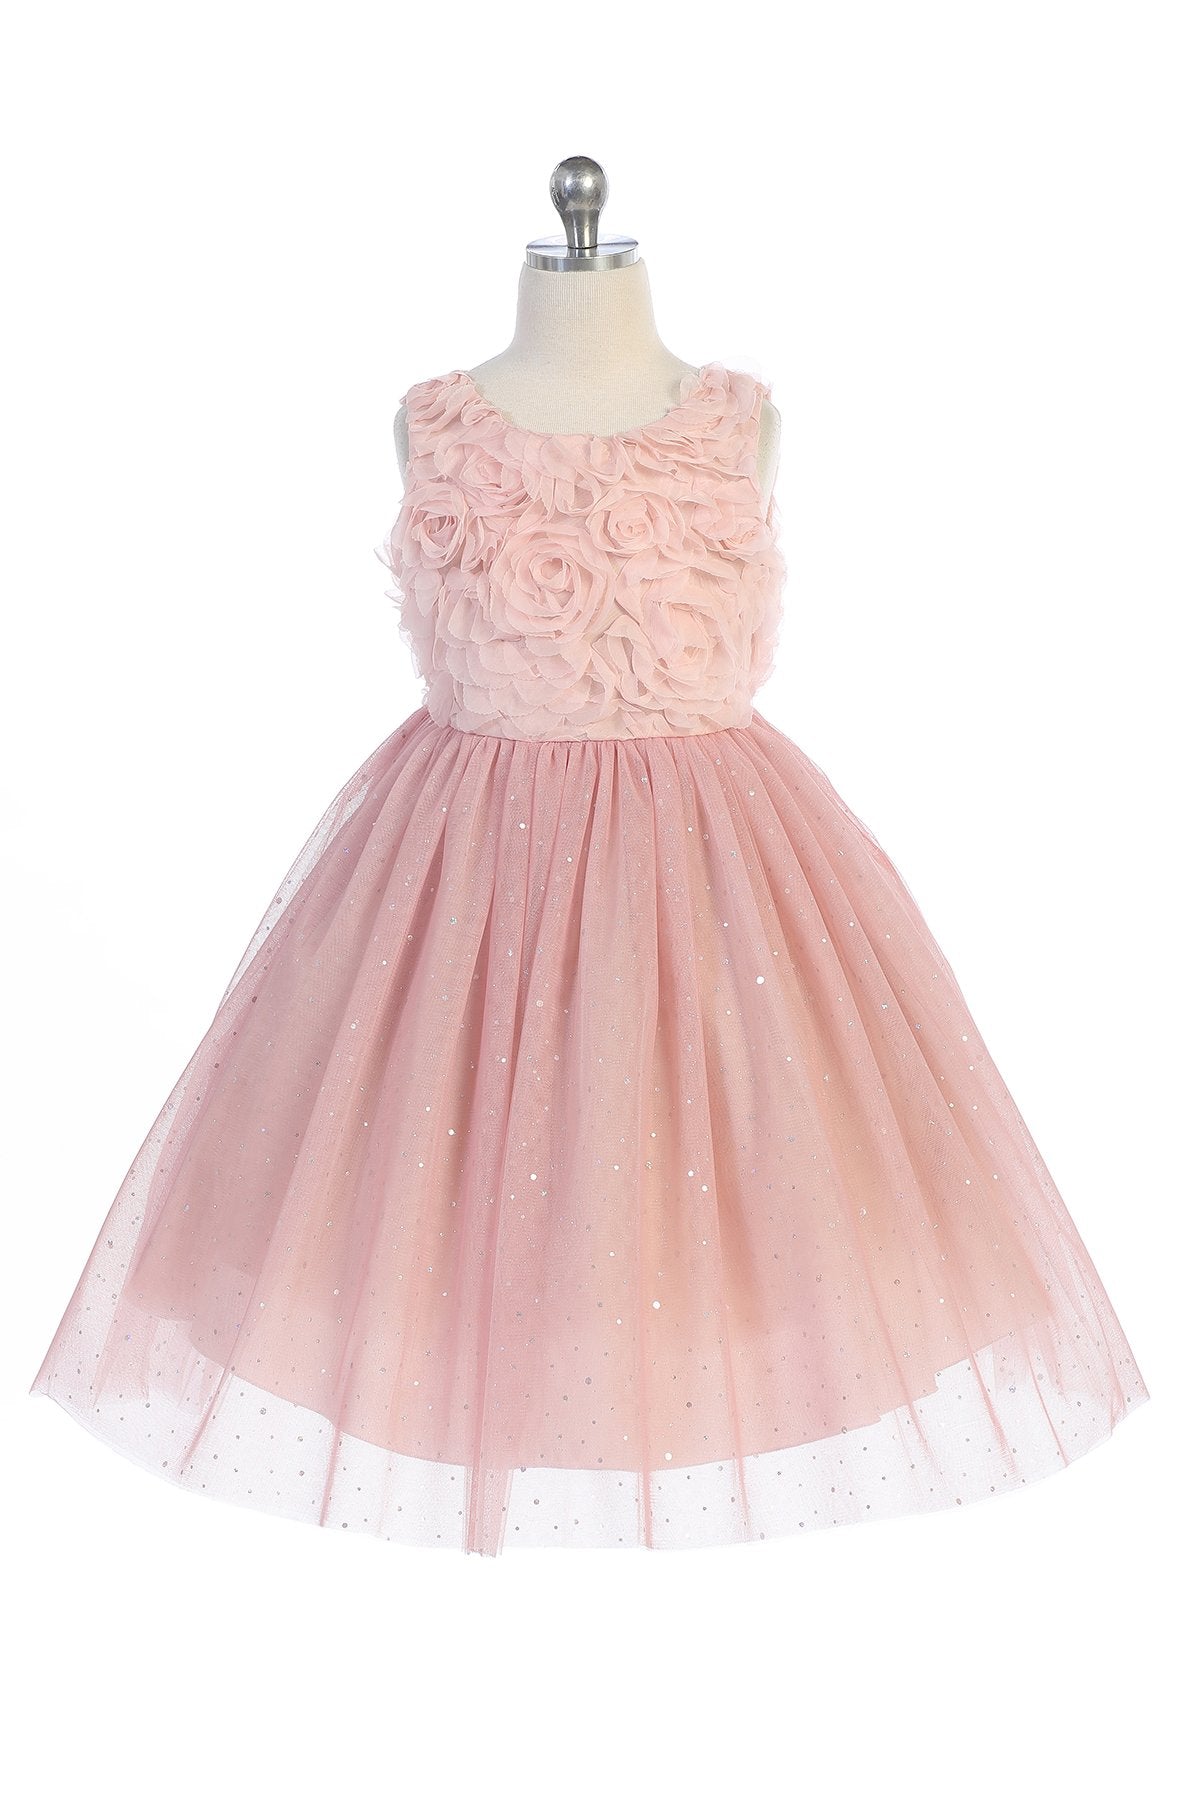 Dress - 3D Ruffle Glitter Skirt Dress